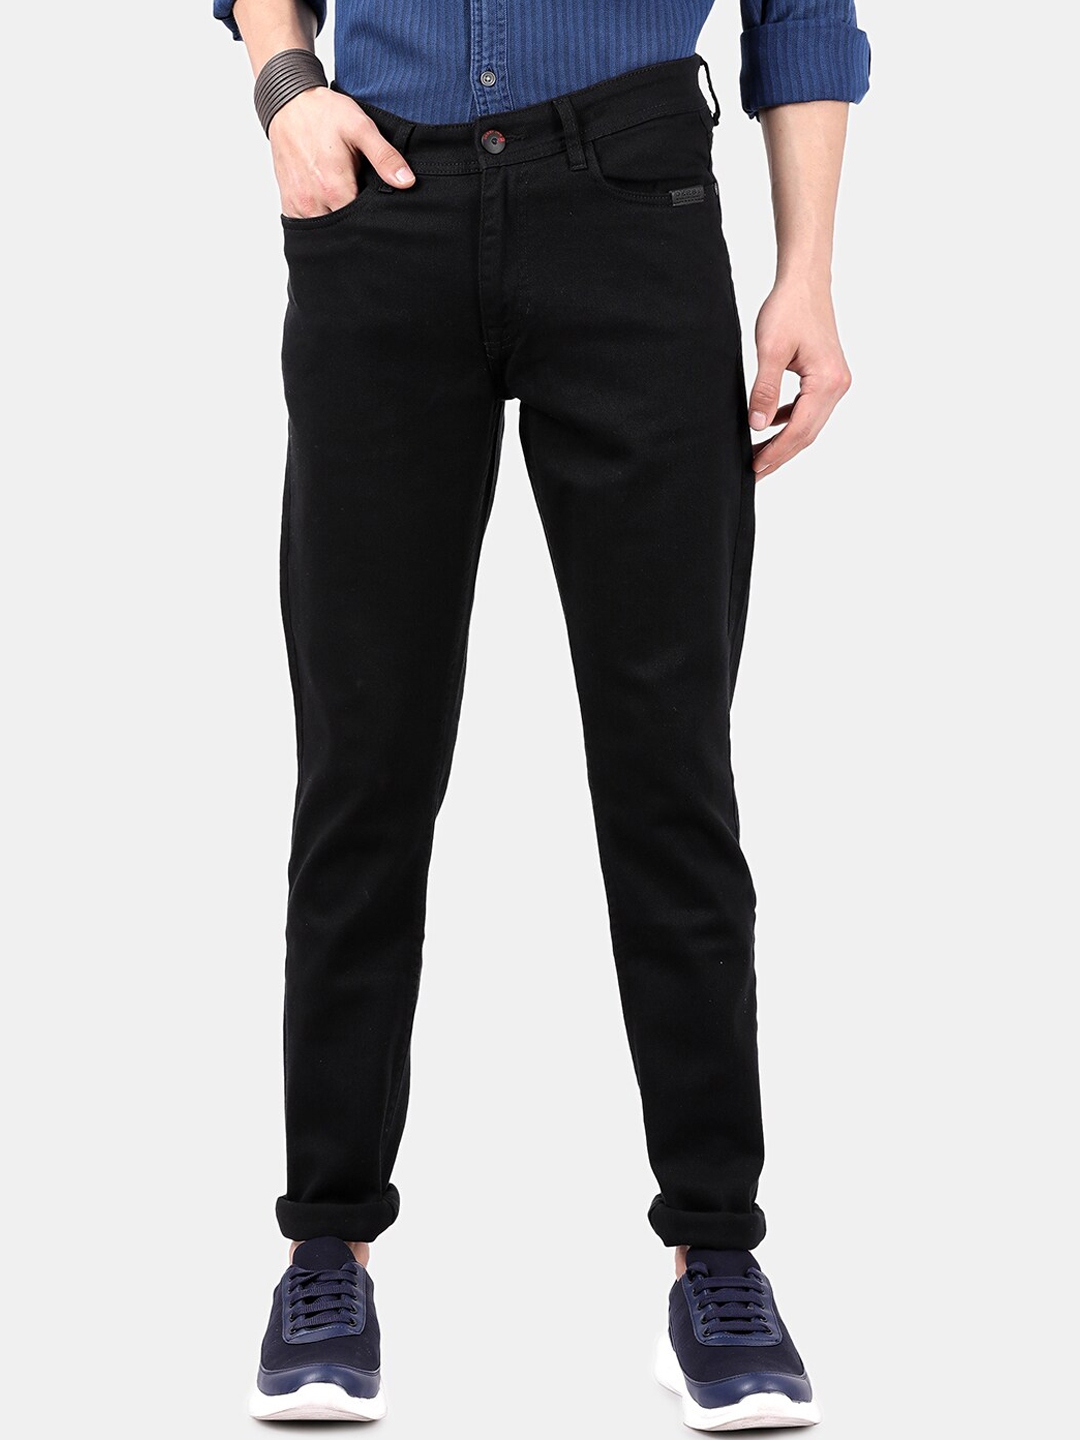 Buy DERBY JEANS COMMUNITY Men Black Slim Fit Mid Rise Clean Look Jeans ...